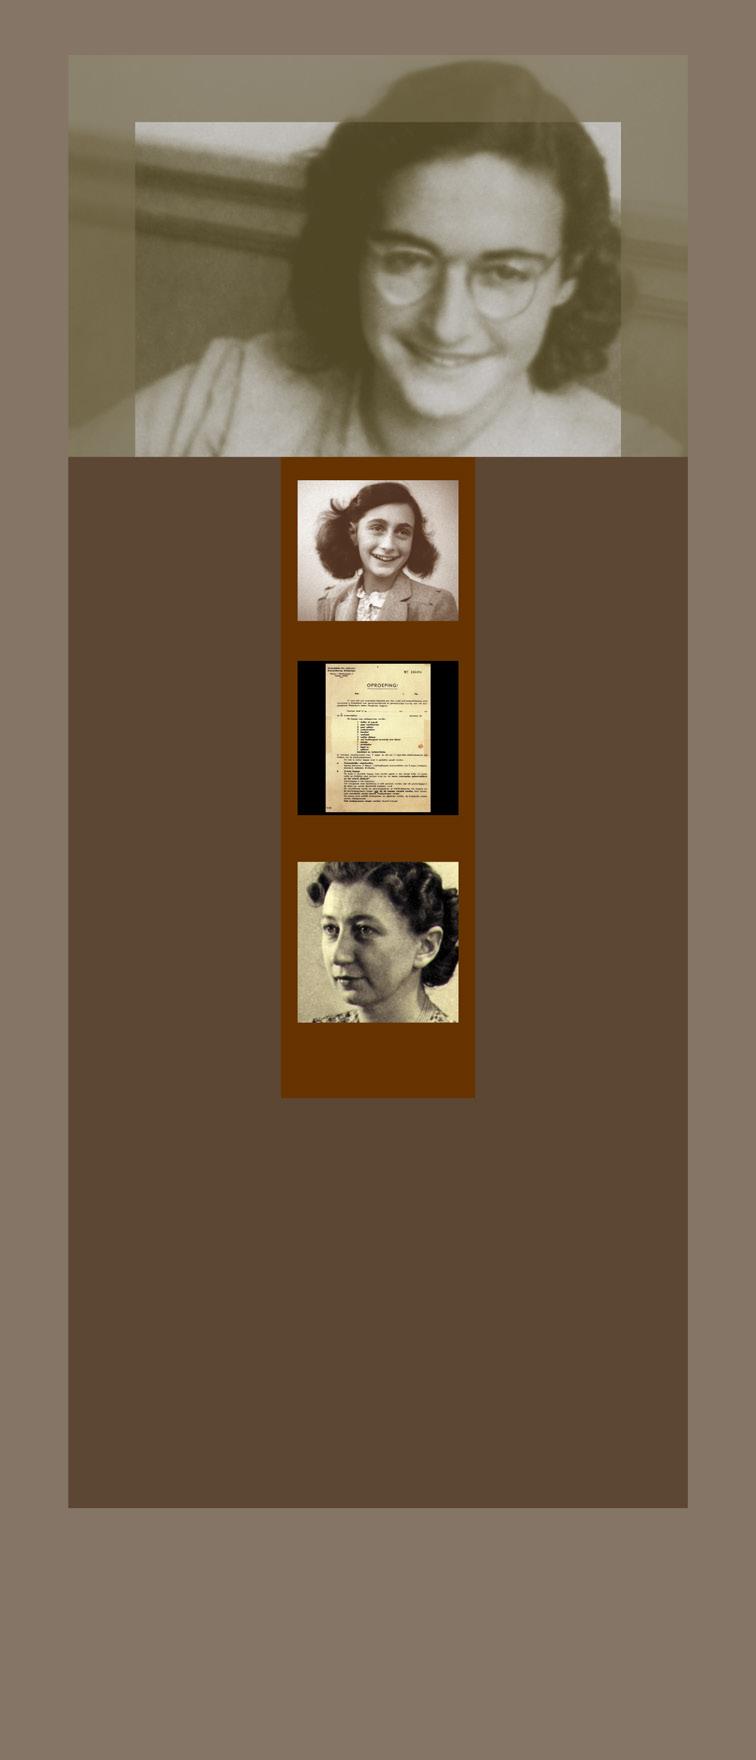 Margot Frank Yahudi Lisesi nde, Aralık 191. Margot Frank at the Jewish Lyceum, December 191. Donup kaldım. I was stunned. Bir celp A call-up Saat üçte kapı zili çaldı.